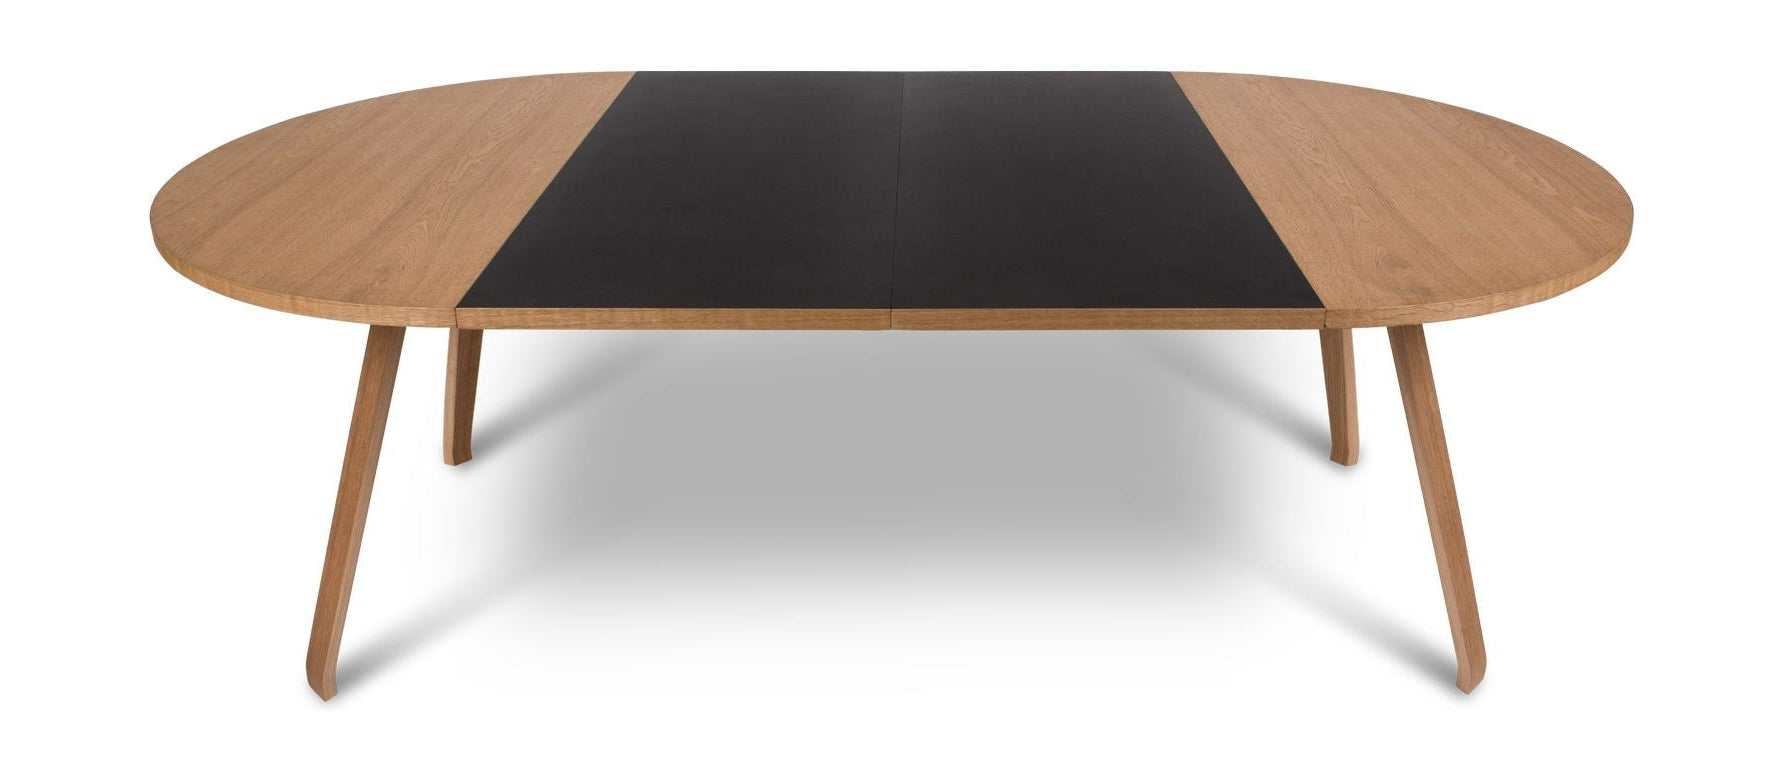 Bent Hansen Primum tafel supplement plaat 51,5 cm, zwarte linoleum